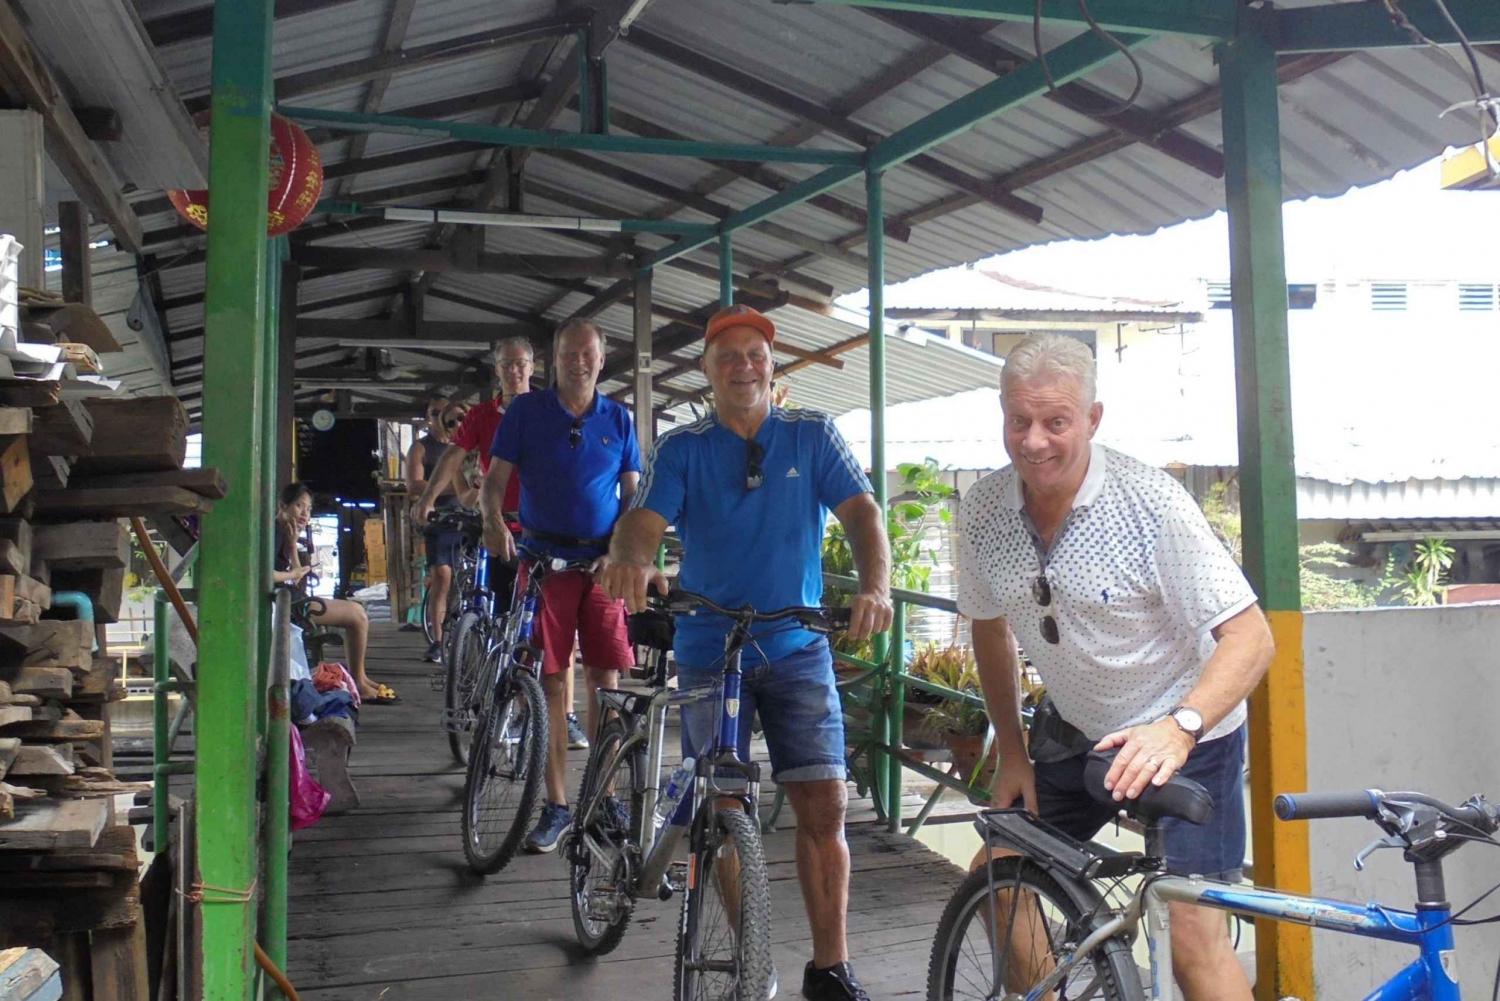 Fantastisk Bangkok på cykeldagstur med frokost